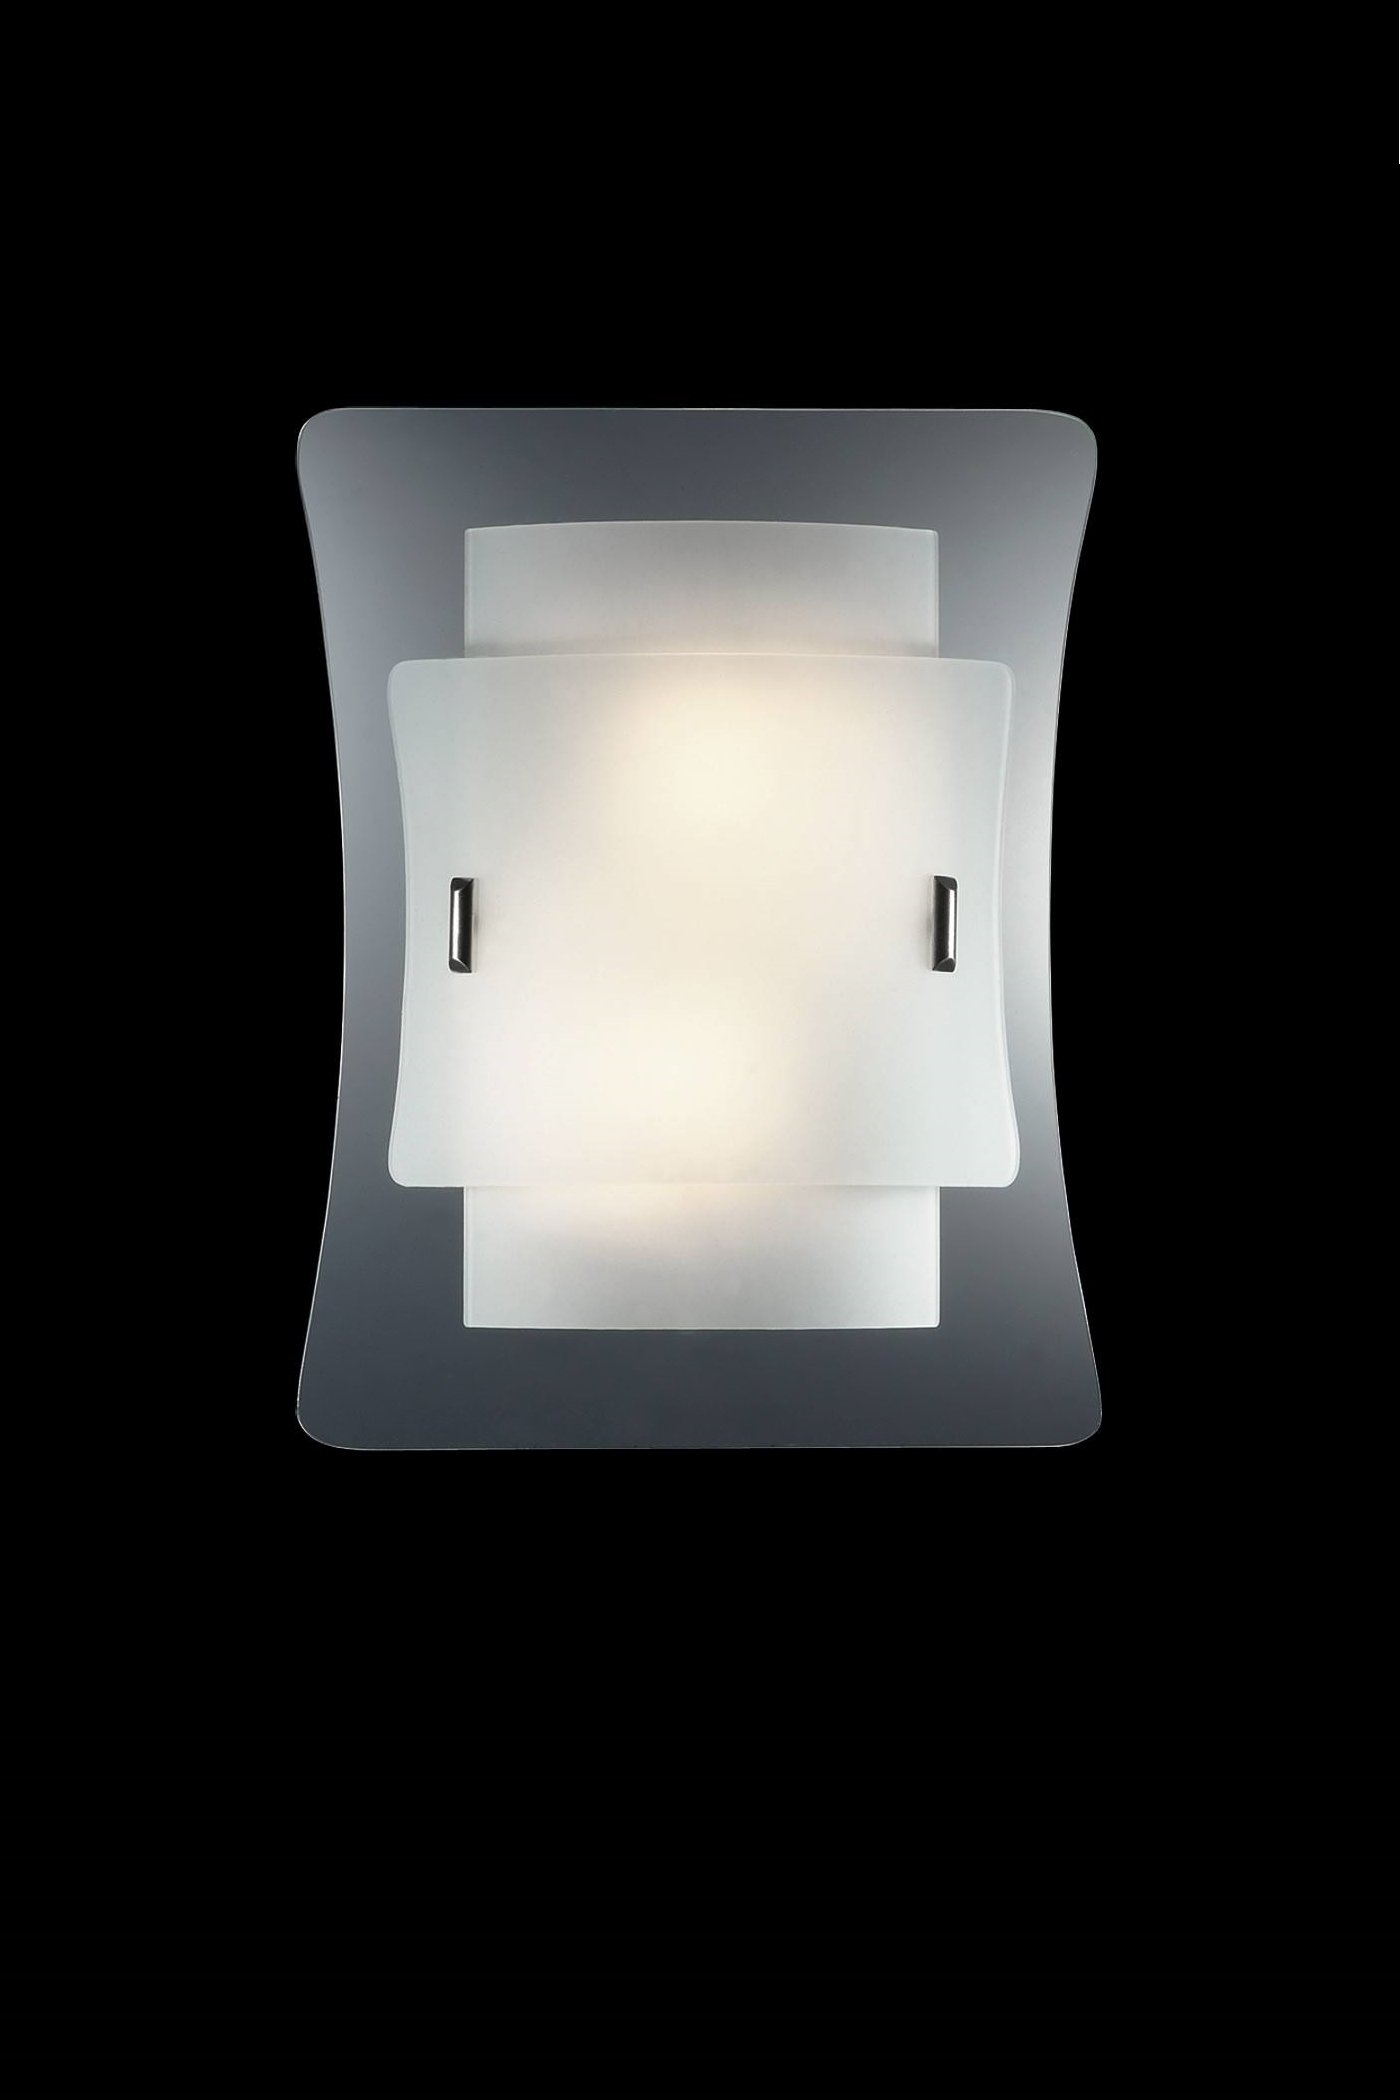   
                        Світильник настінний IDEAL LUX (Італія) 41867    
                         у стилі модерн.  
                        Тип джерела світла: cвітлодіодні led, енергозберігаючі, розжарювання.                                                 Кольори плафонів і підвісок: білий, прозорий.                         Матеріал: скло.                          фото 1